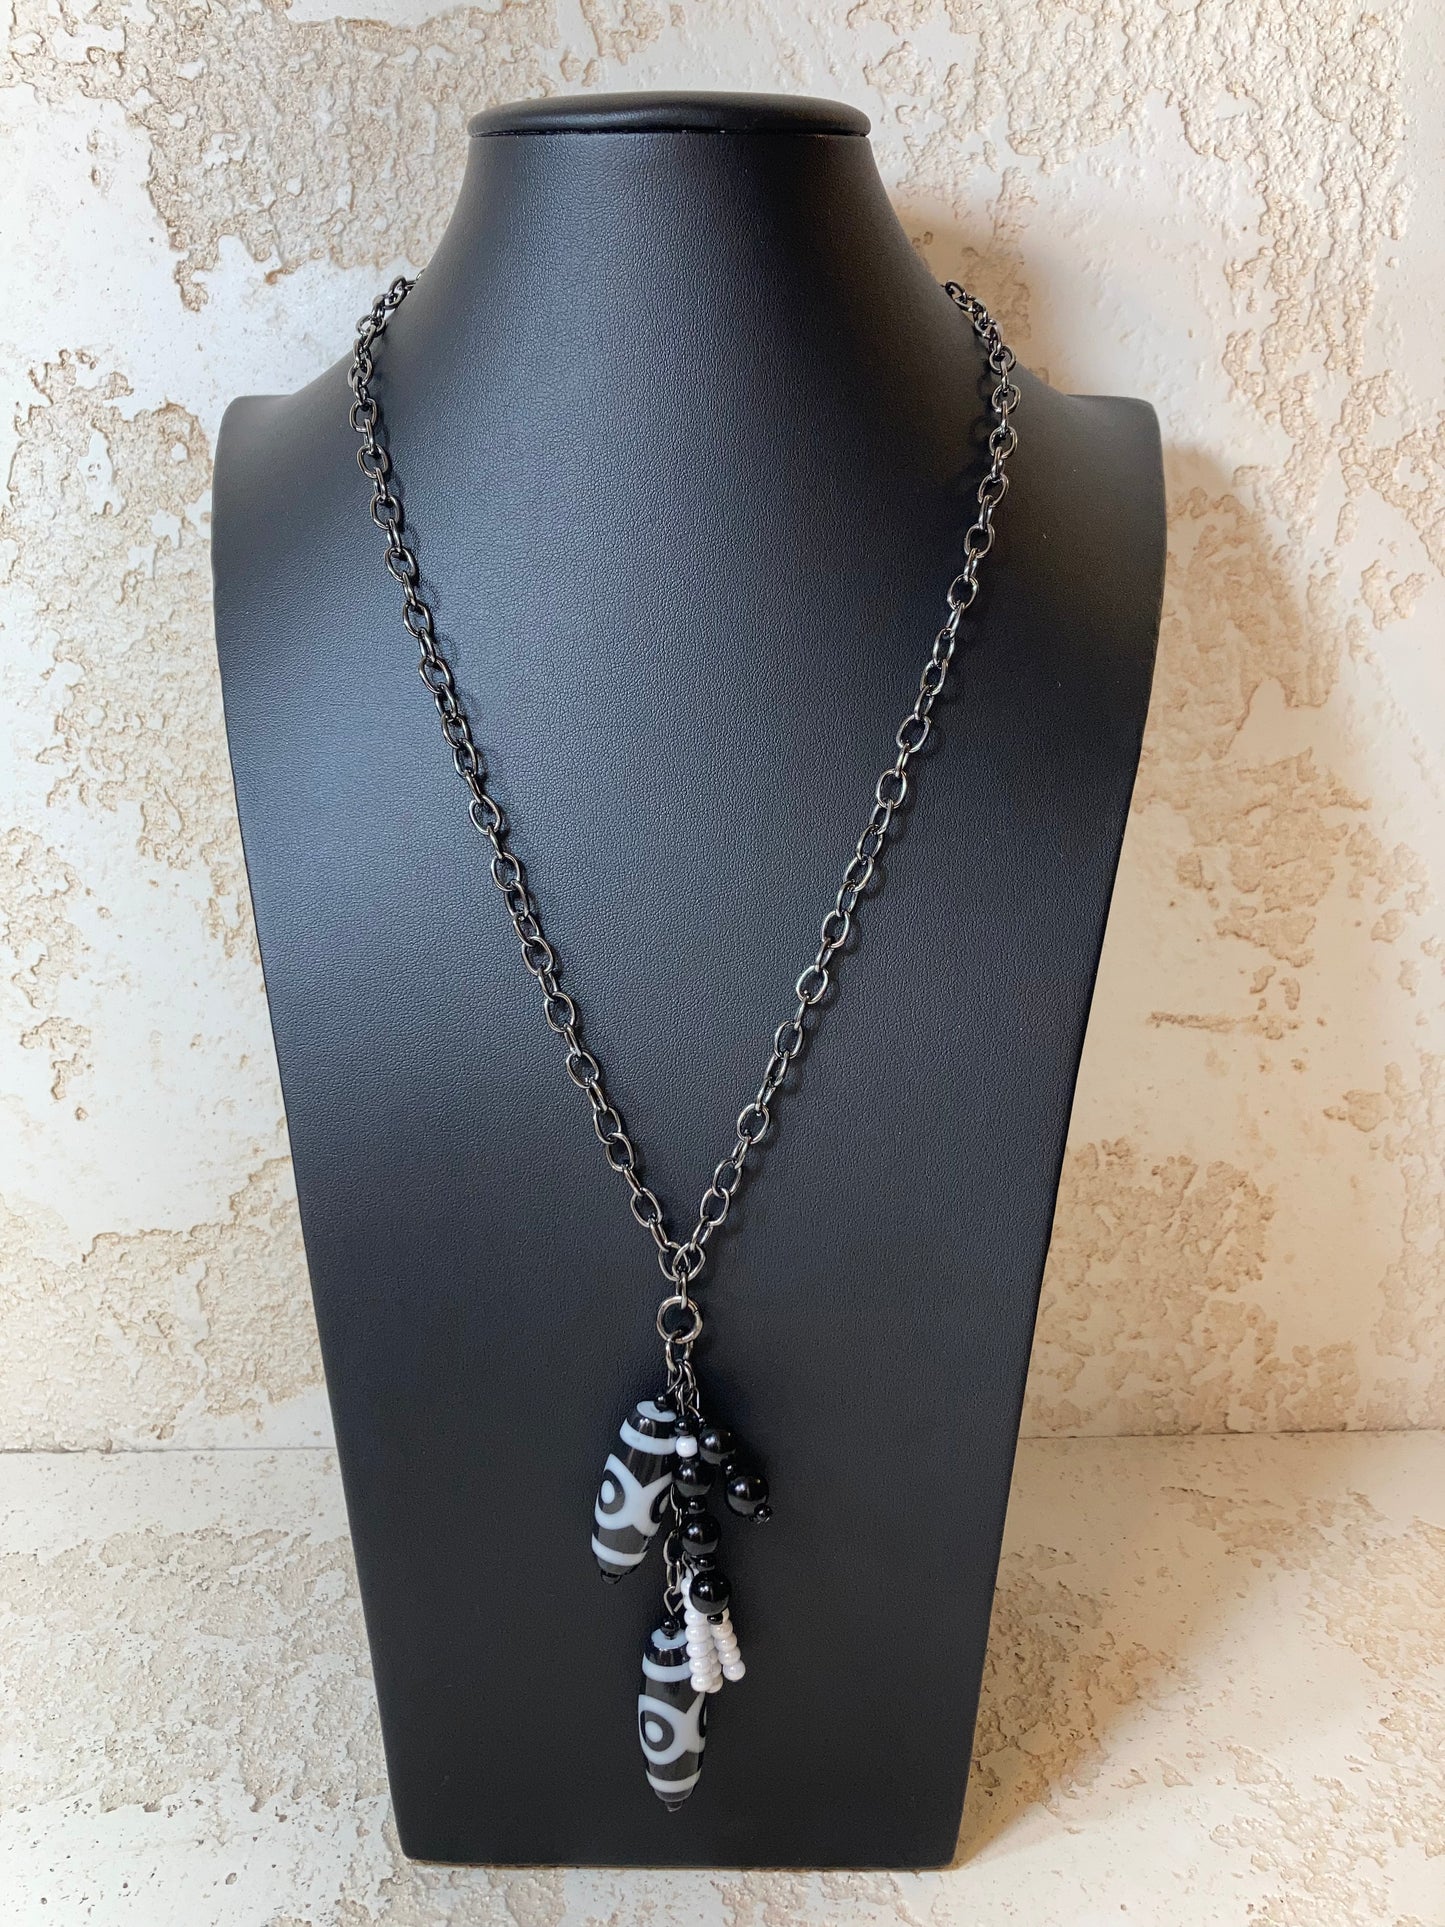 Black and White Safari Necklace